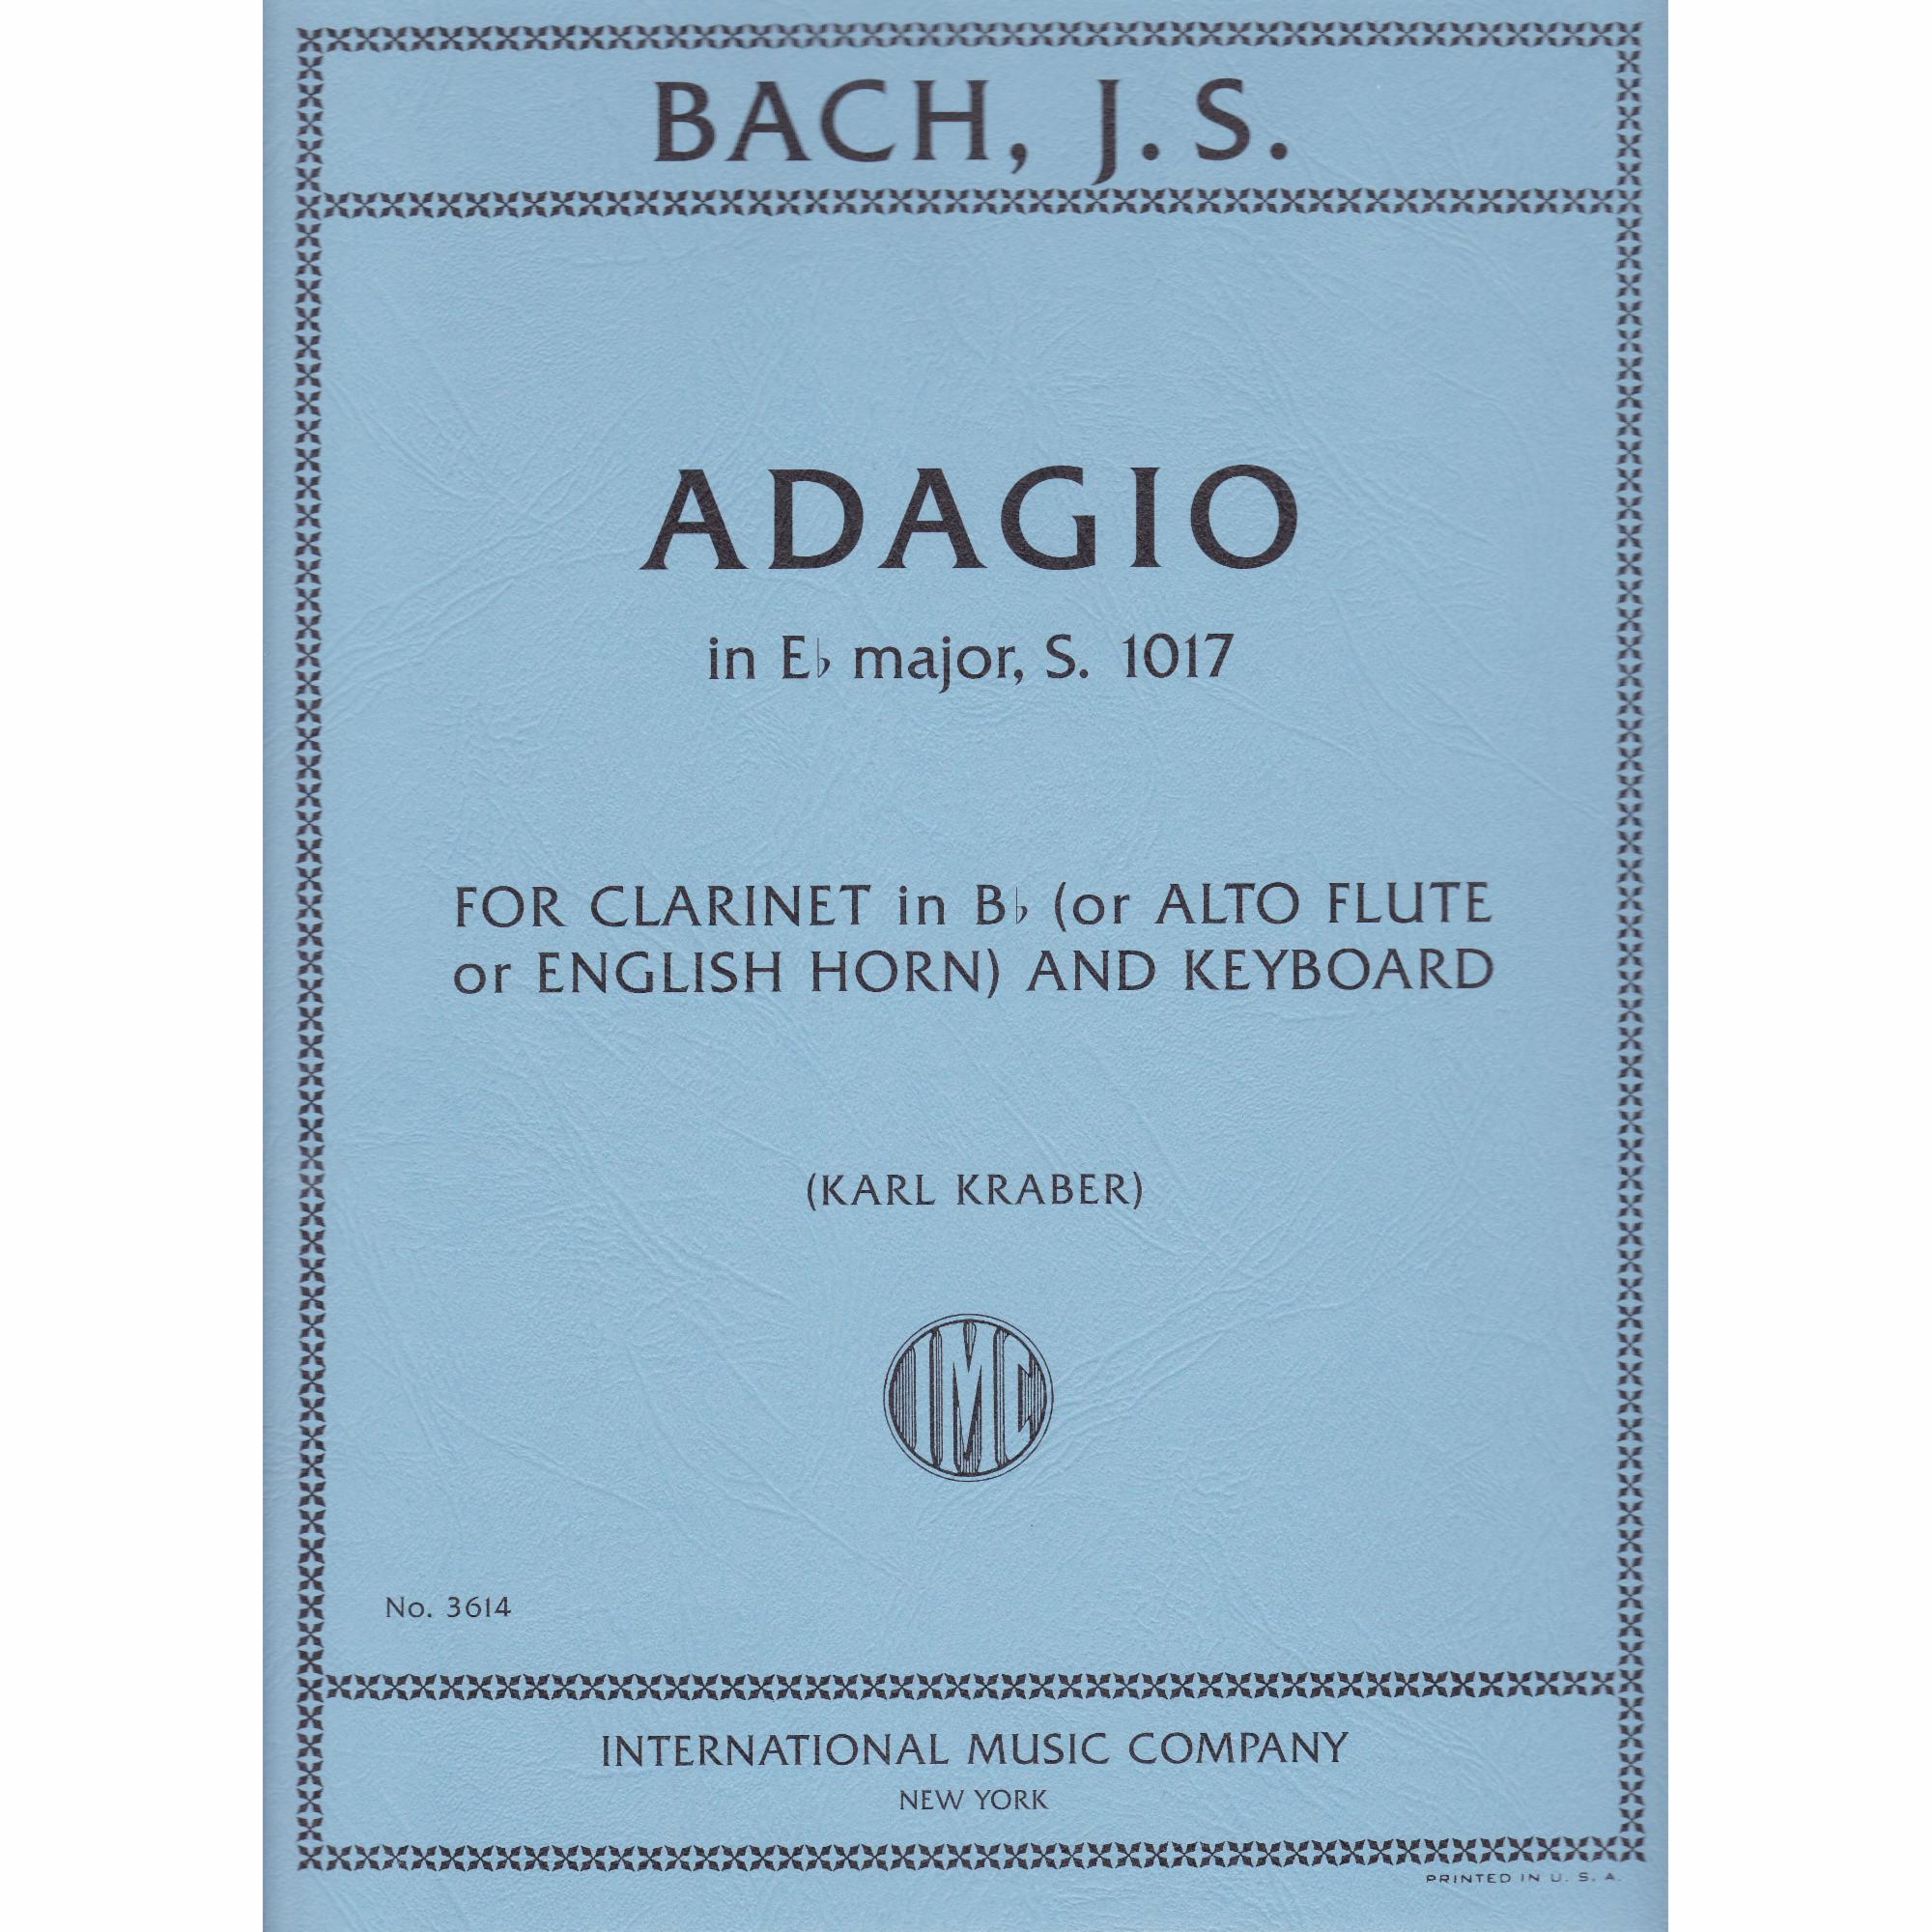 Adagio in Eb, S. 1017